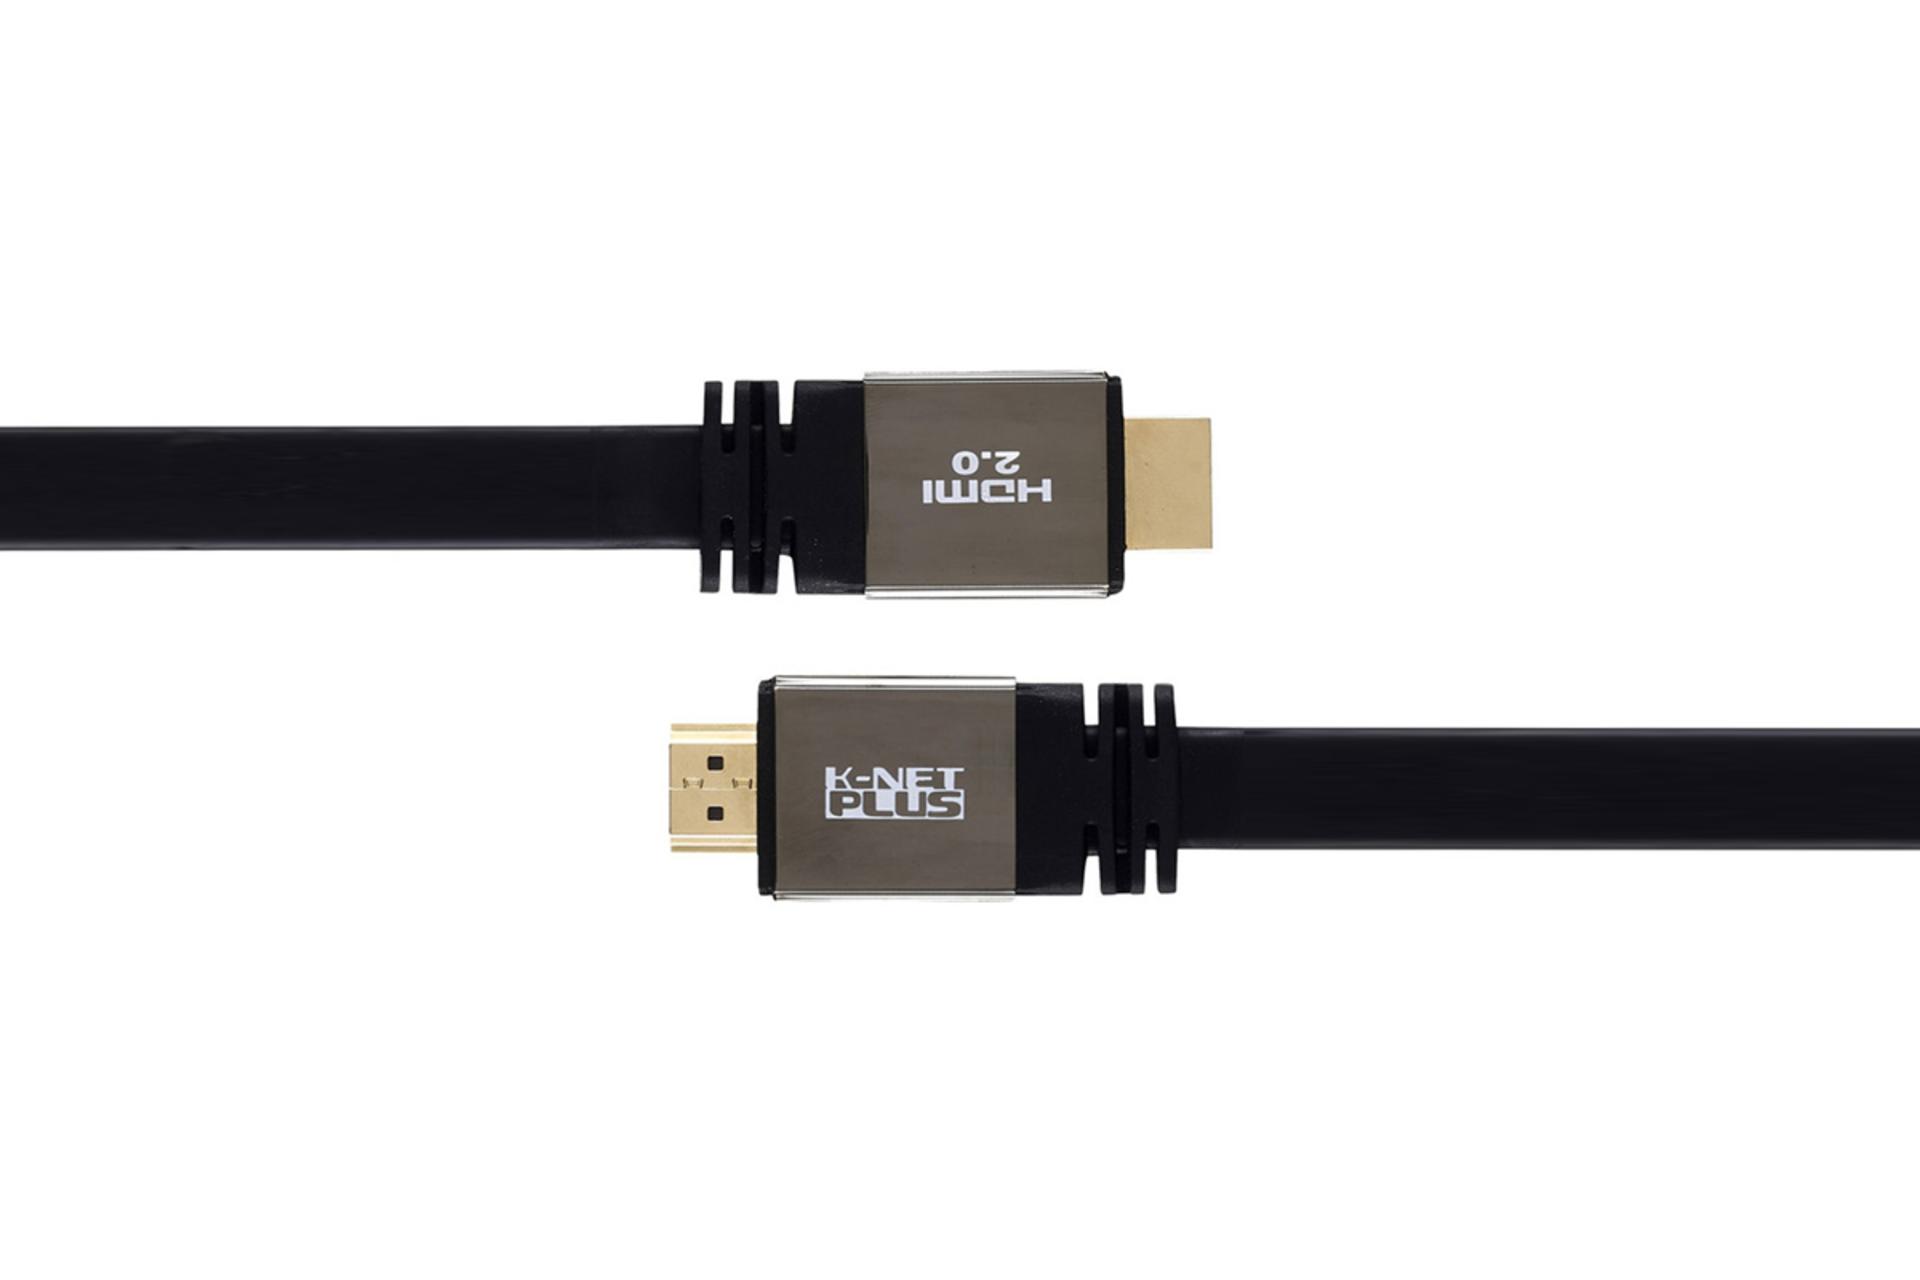 کانکتور و اتصال کابل HDMI کی نت پلاس KP-HC163 4K 60Hz نسخه 2.0 با طول 10 متر